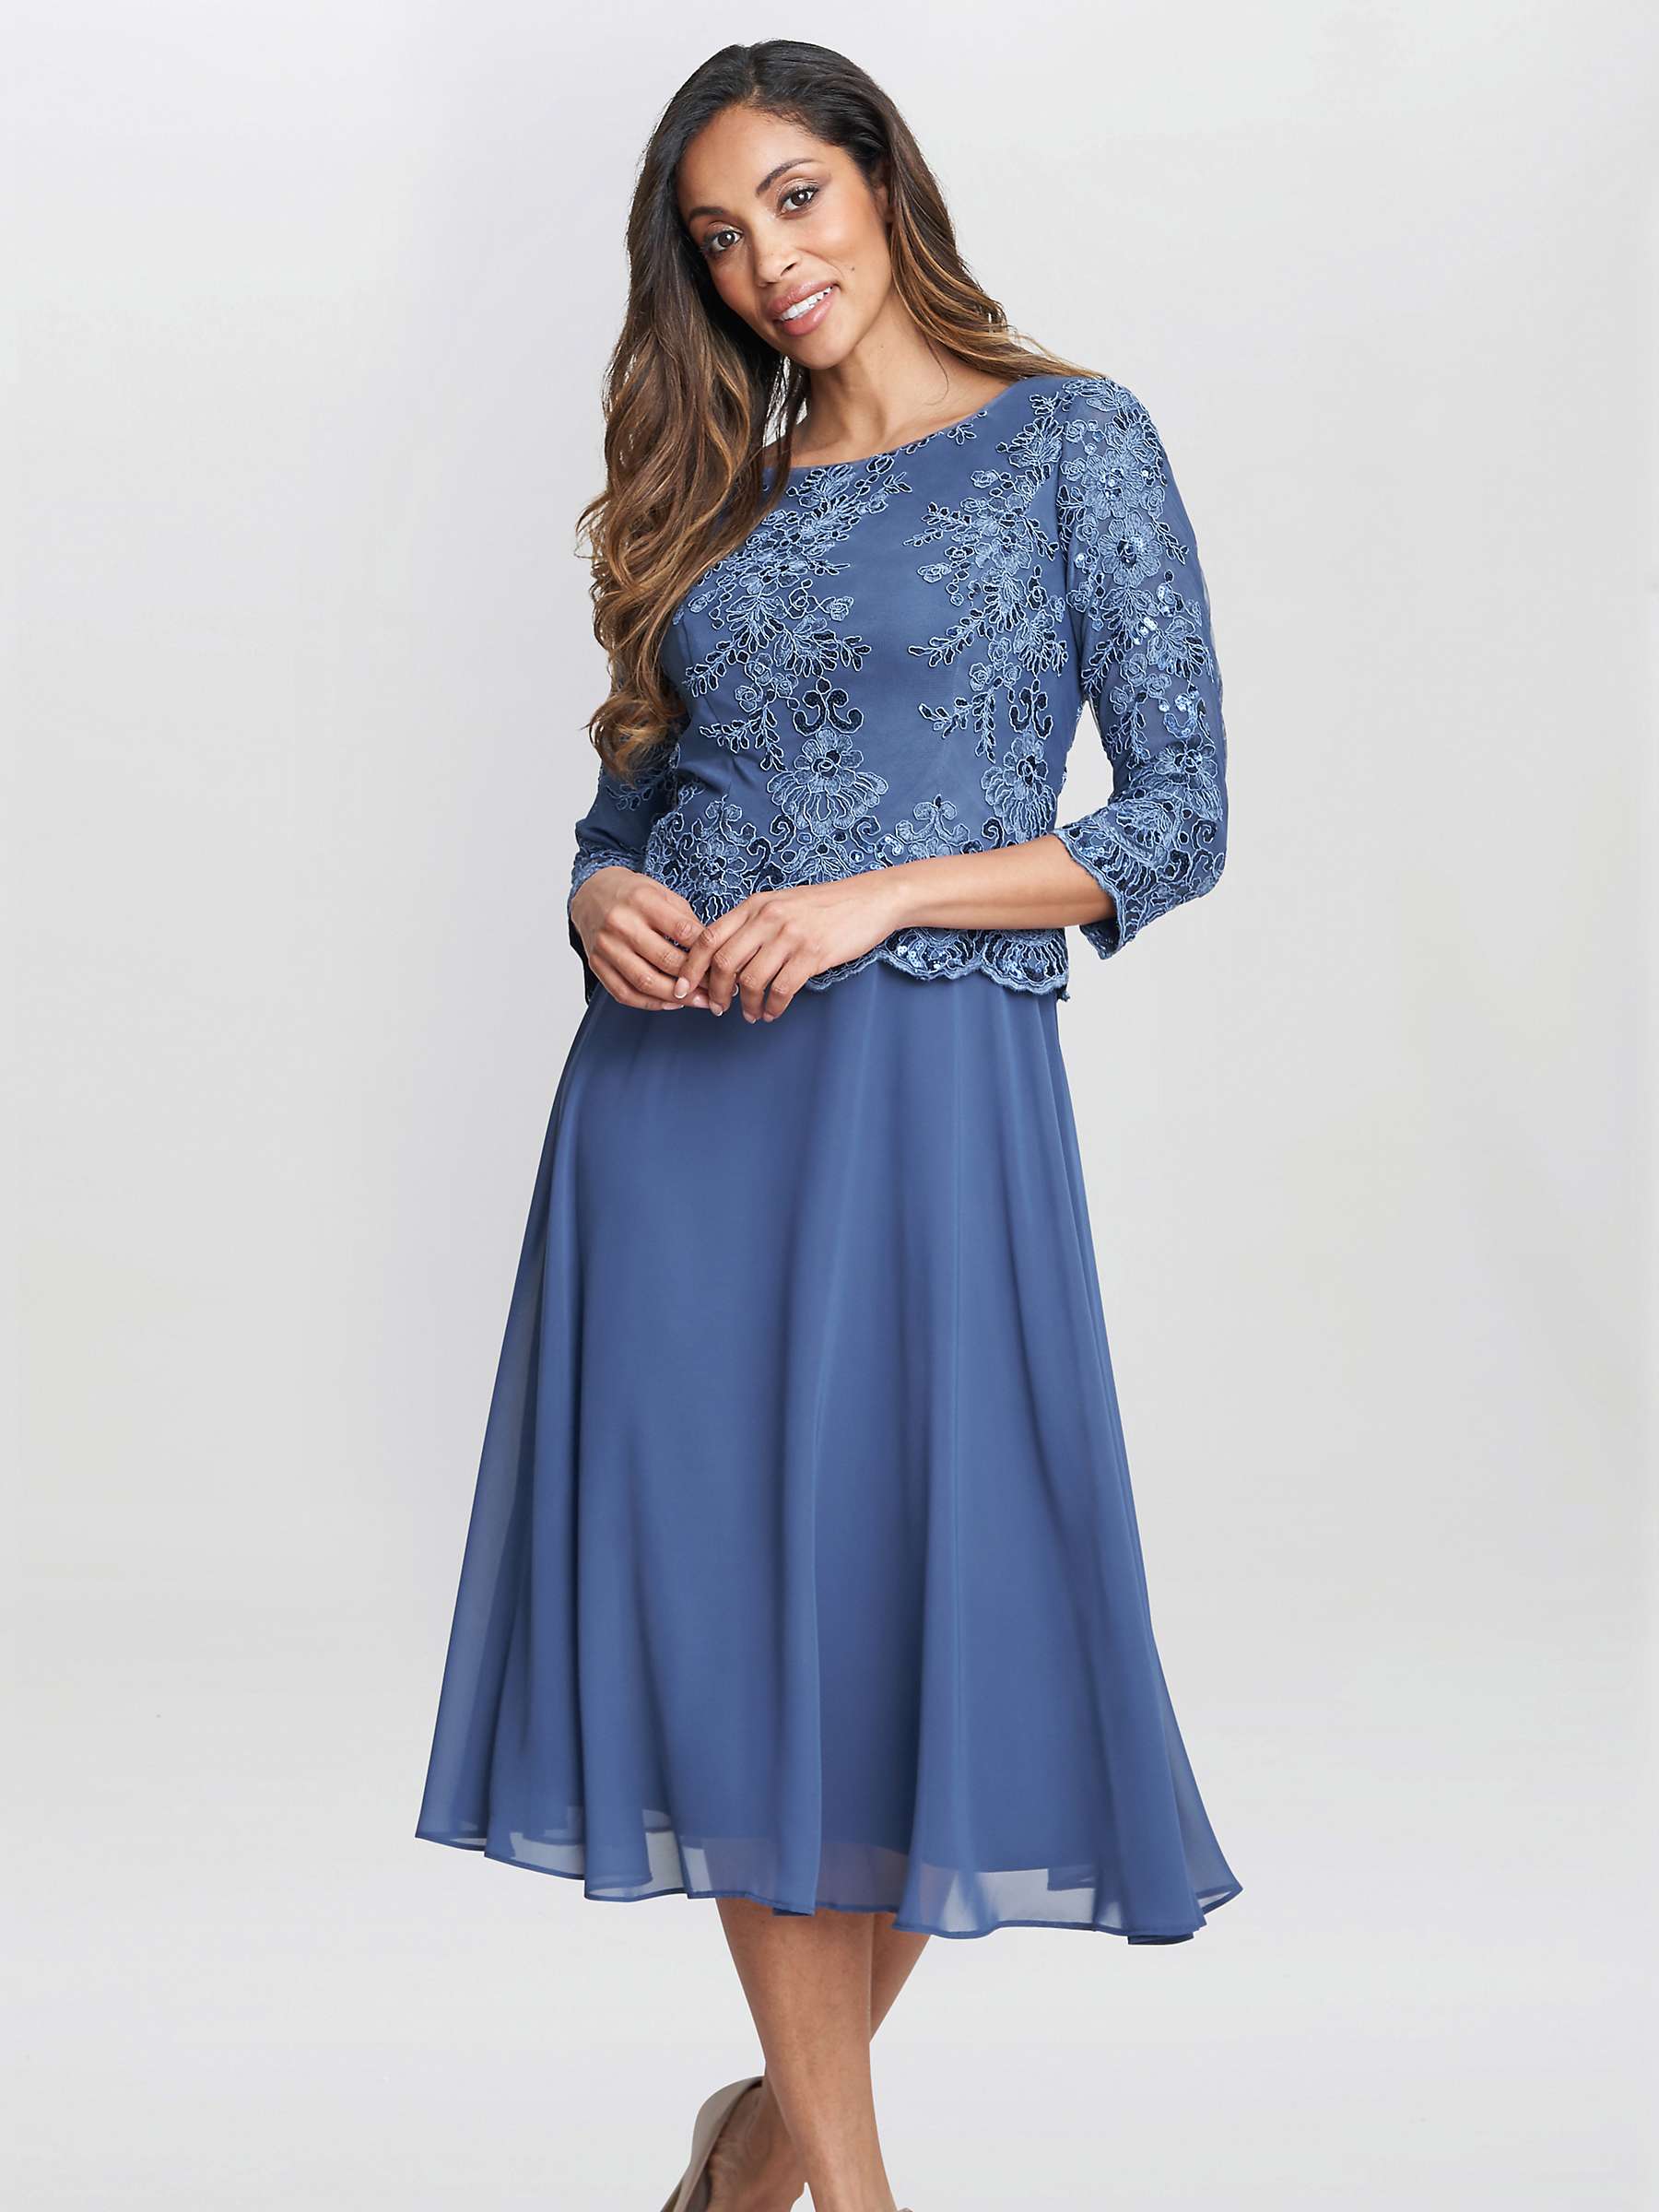 Buy Gina Bacconi Embellished Bodice A-Line Dress, Blue Online at johnlewis.com